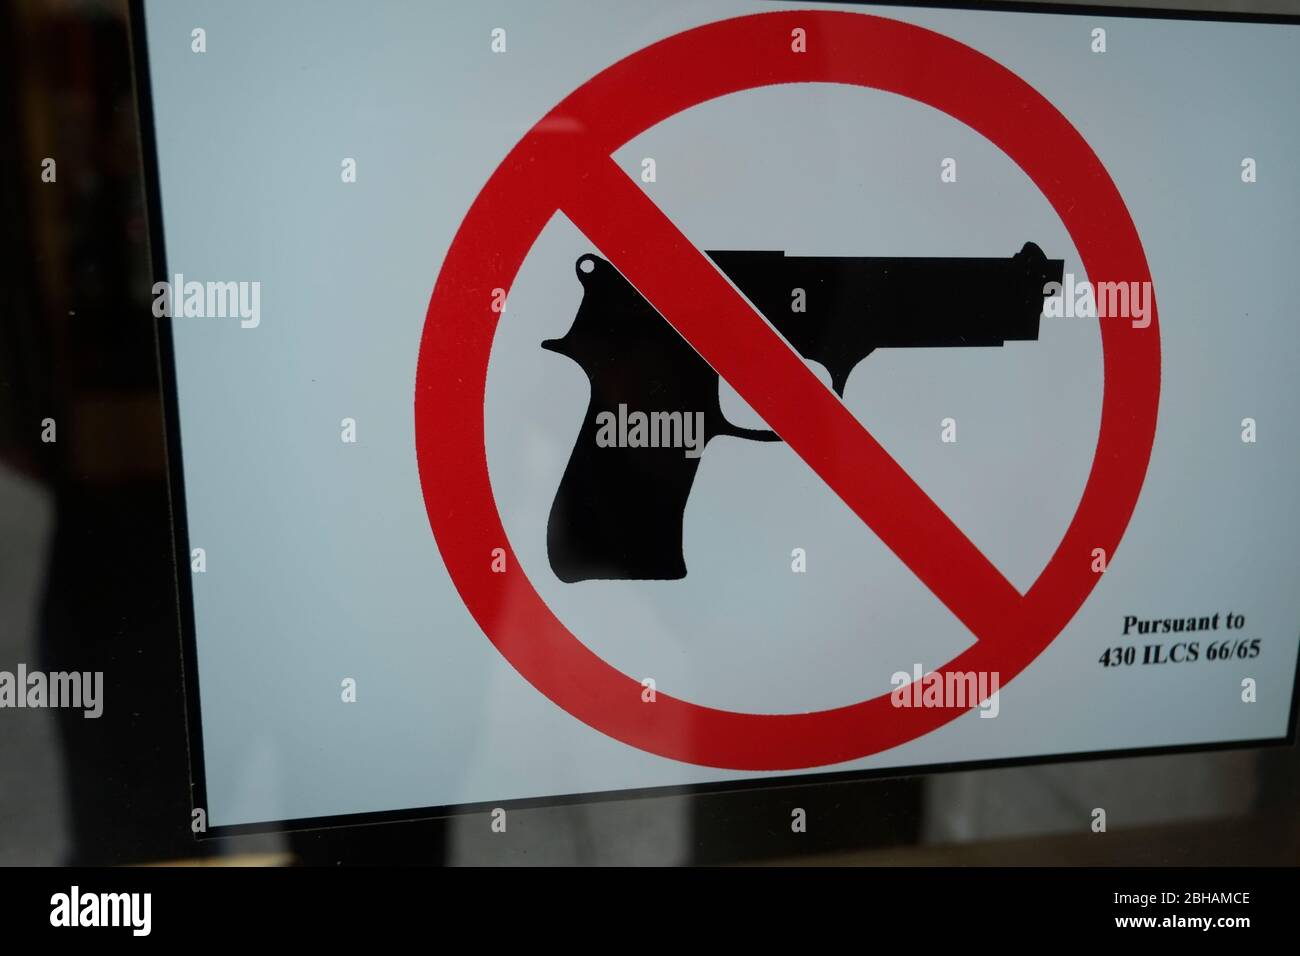 El signo de arma de fuego cruzada en la puerta del banco prohíbe la entrada con armas Foto de stock